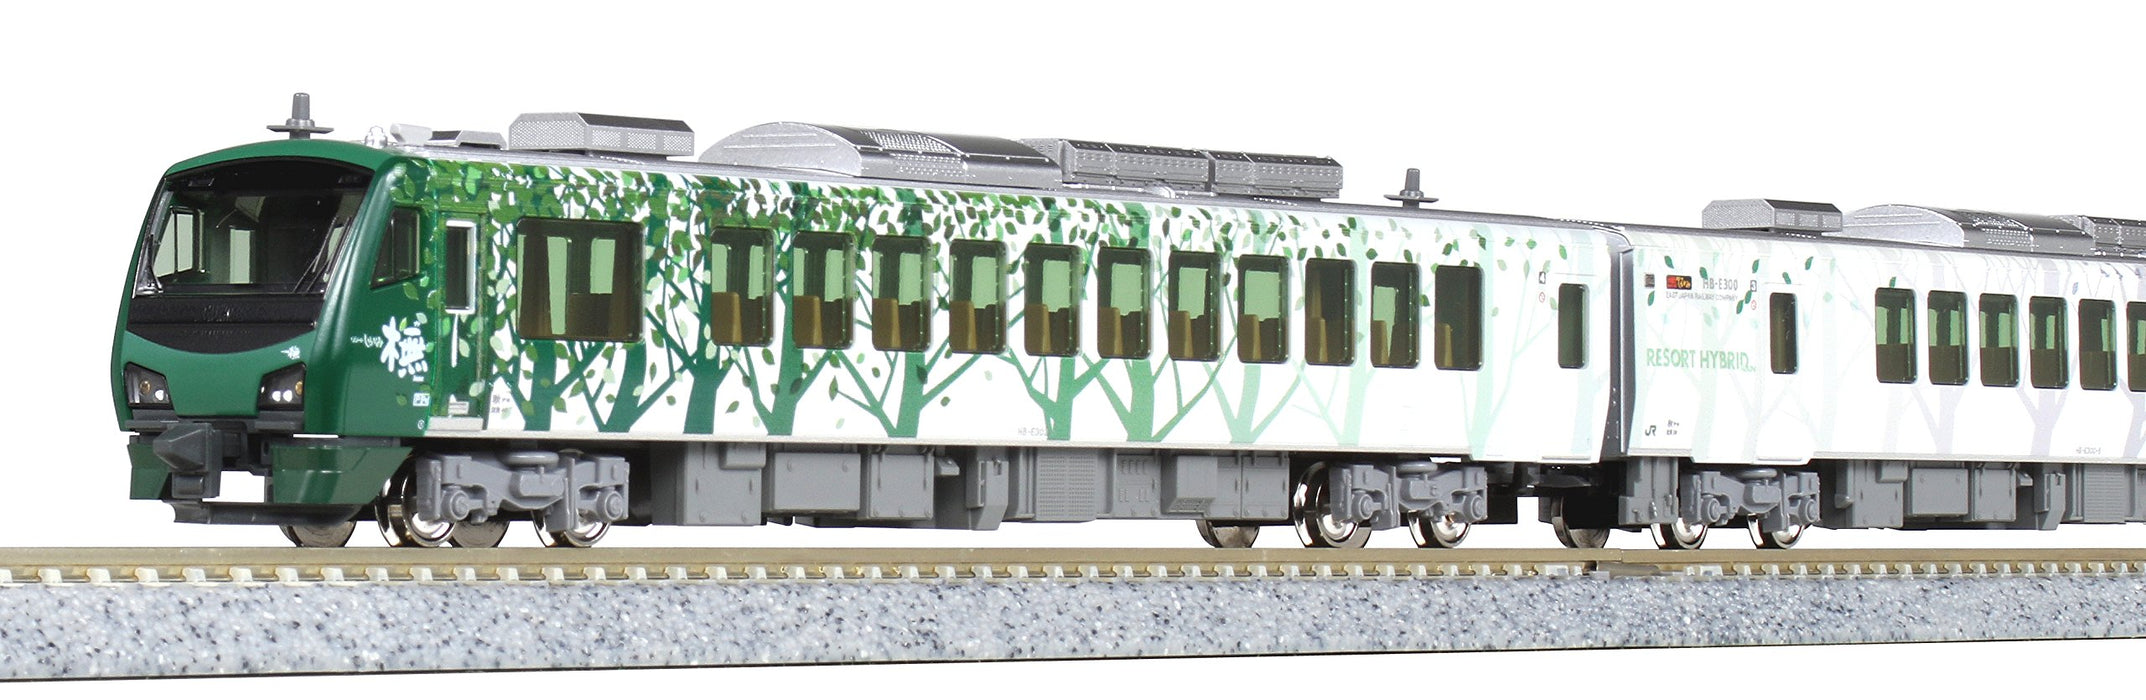 Kato Spur N 4-Wagen-Set Hb-E300 Serie Resort Shirakami Diesel Eisenbahnmodell 10-1463